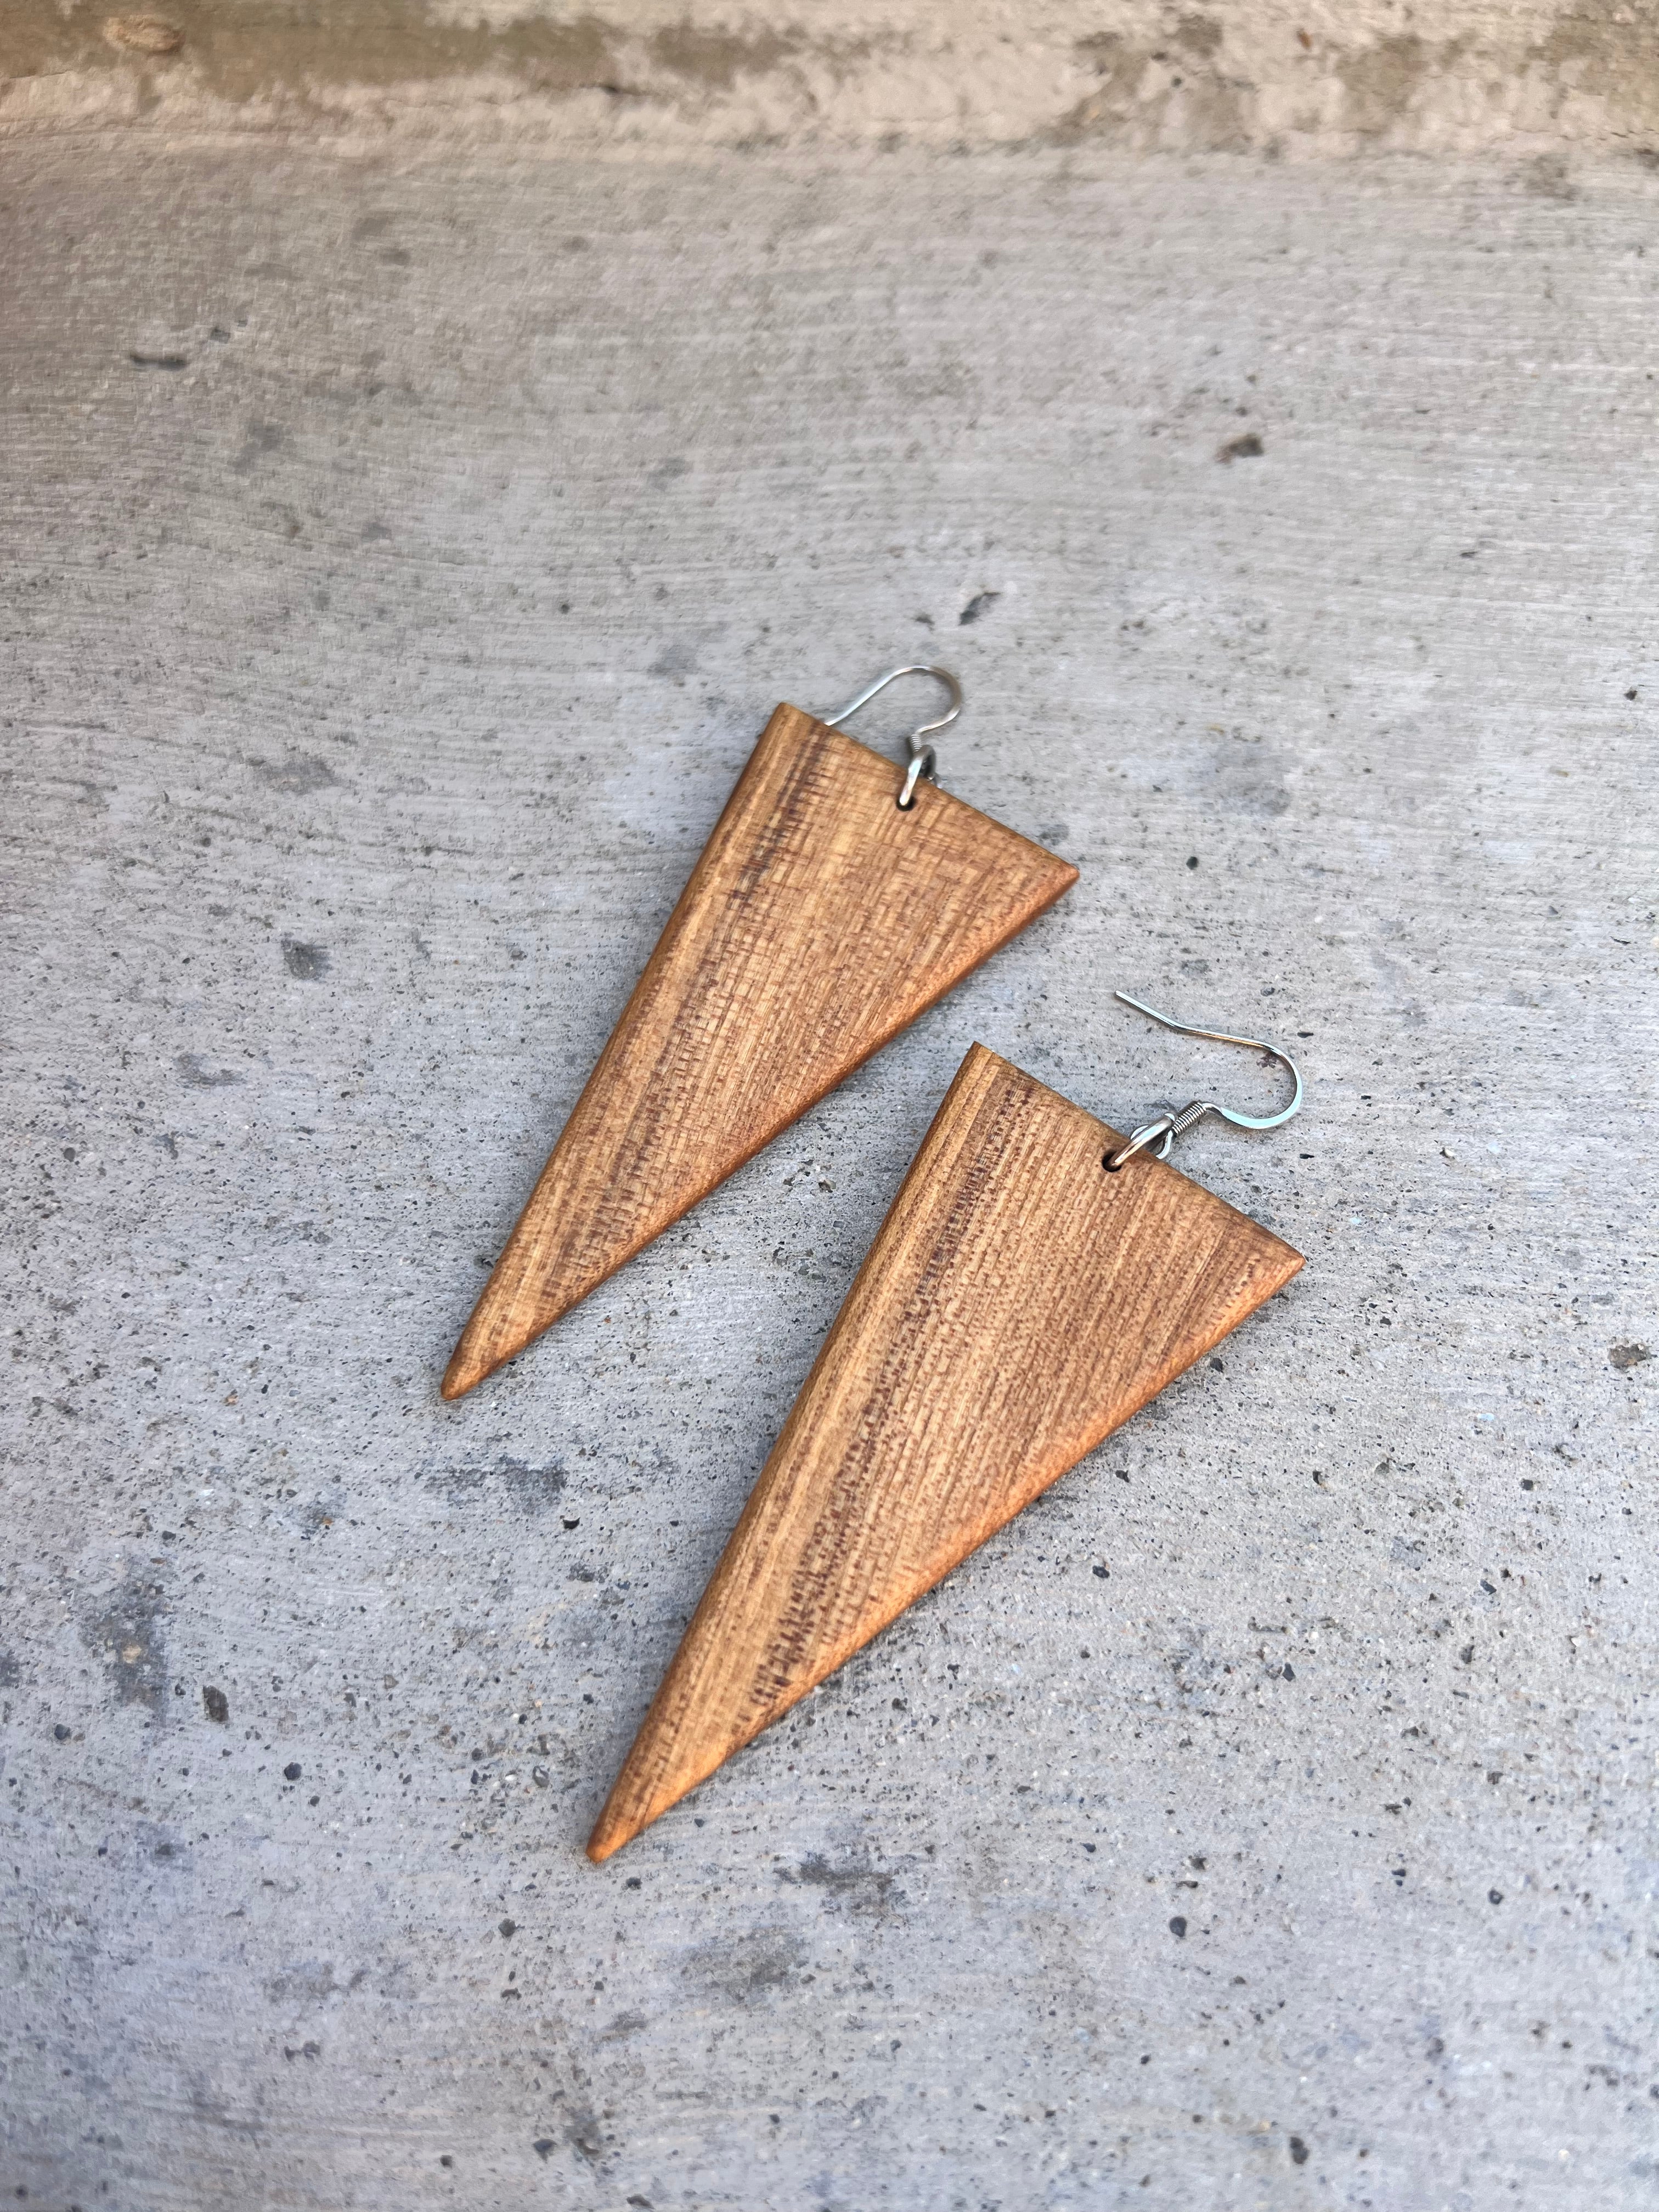 Dangle Triangle Plastic Earrings – KMEOSCH Jewelry